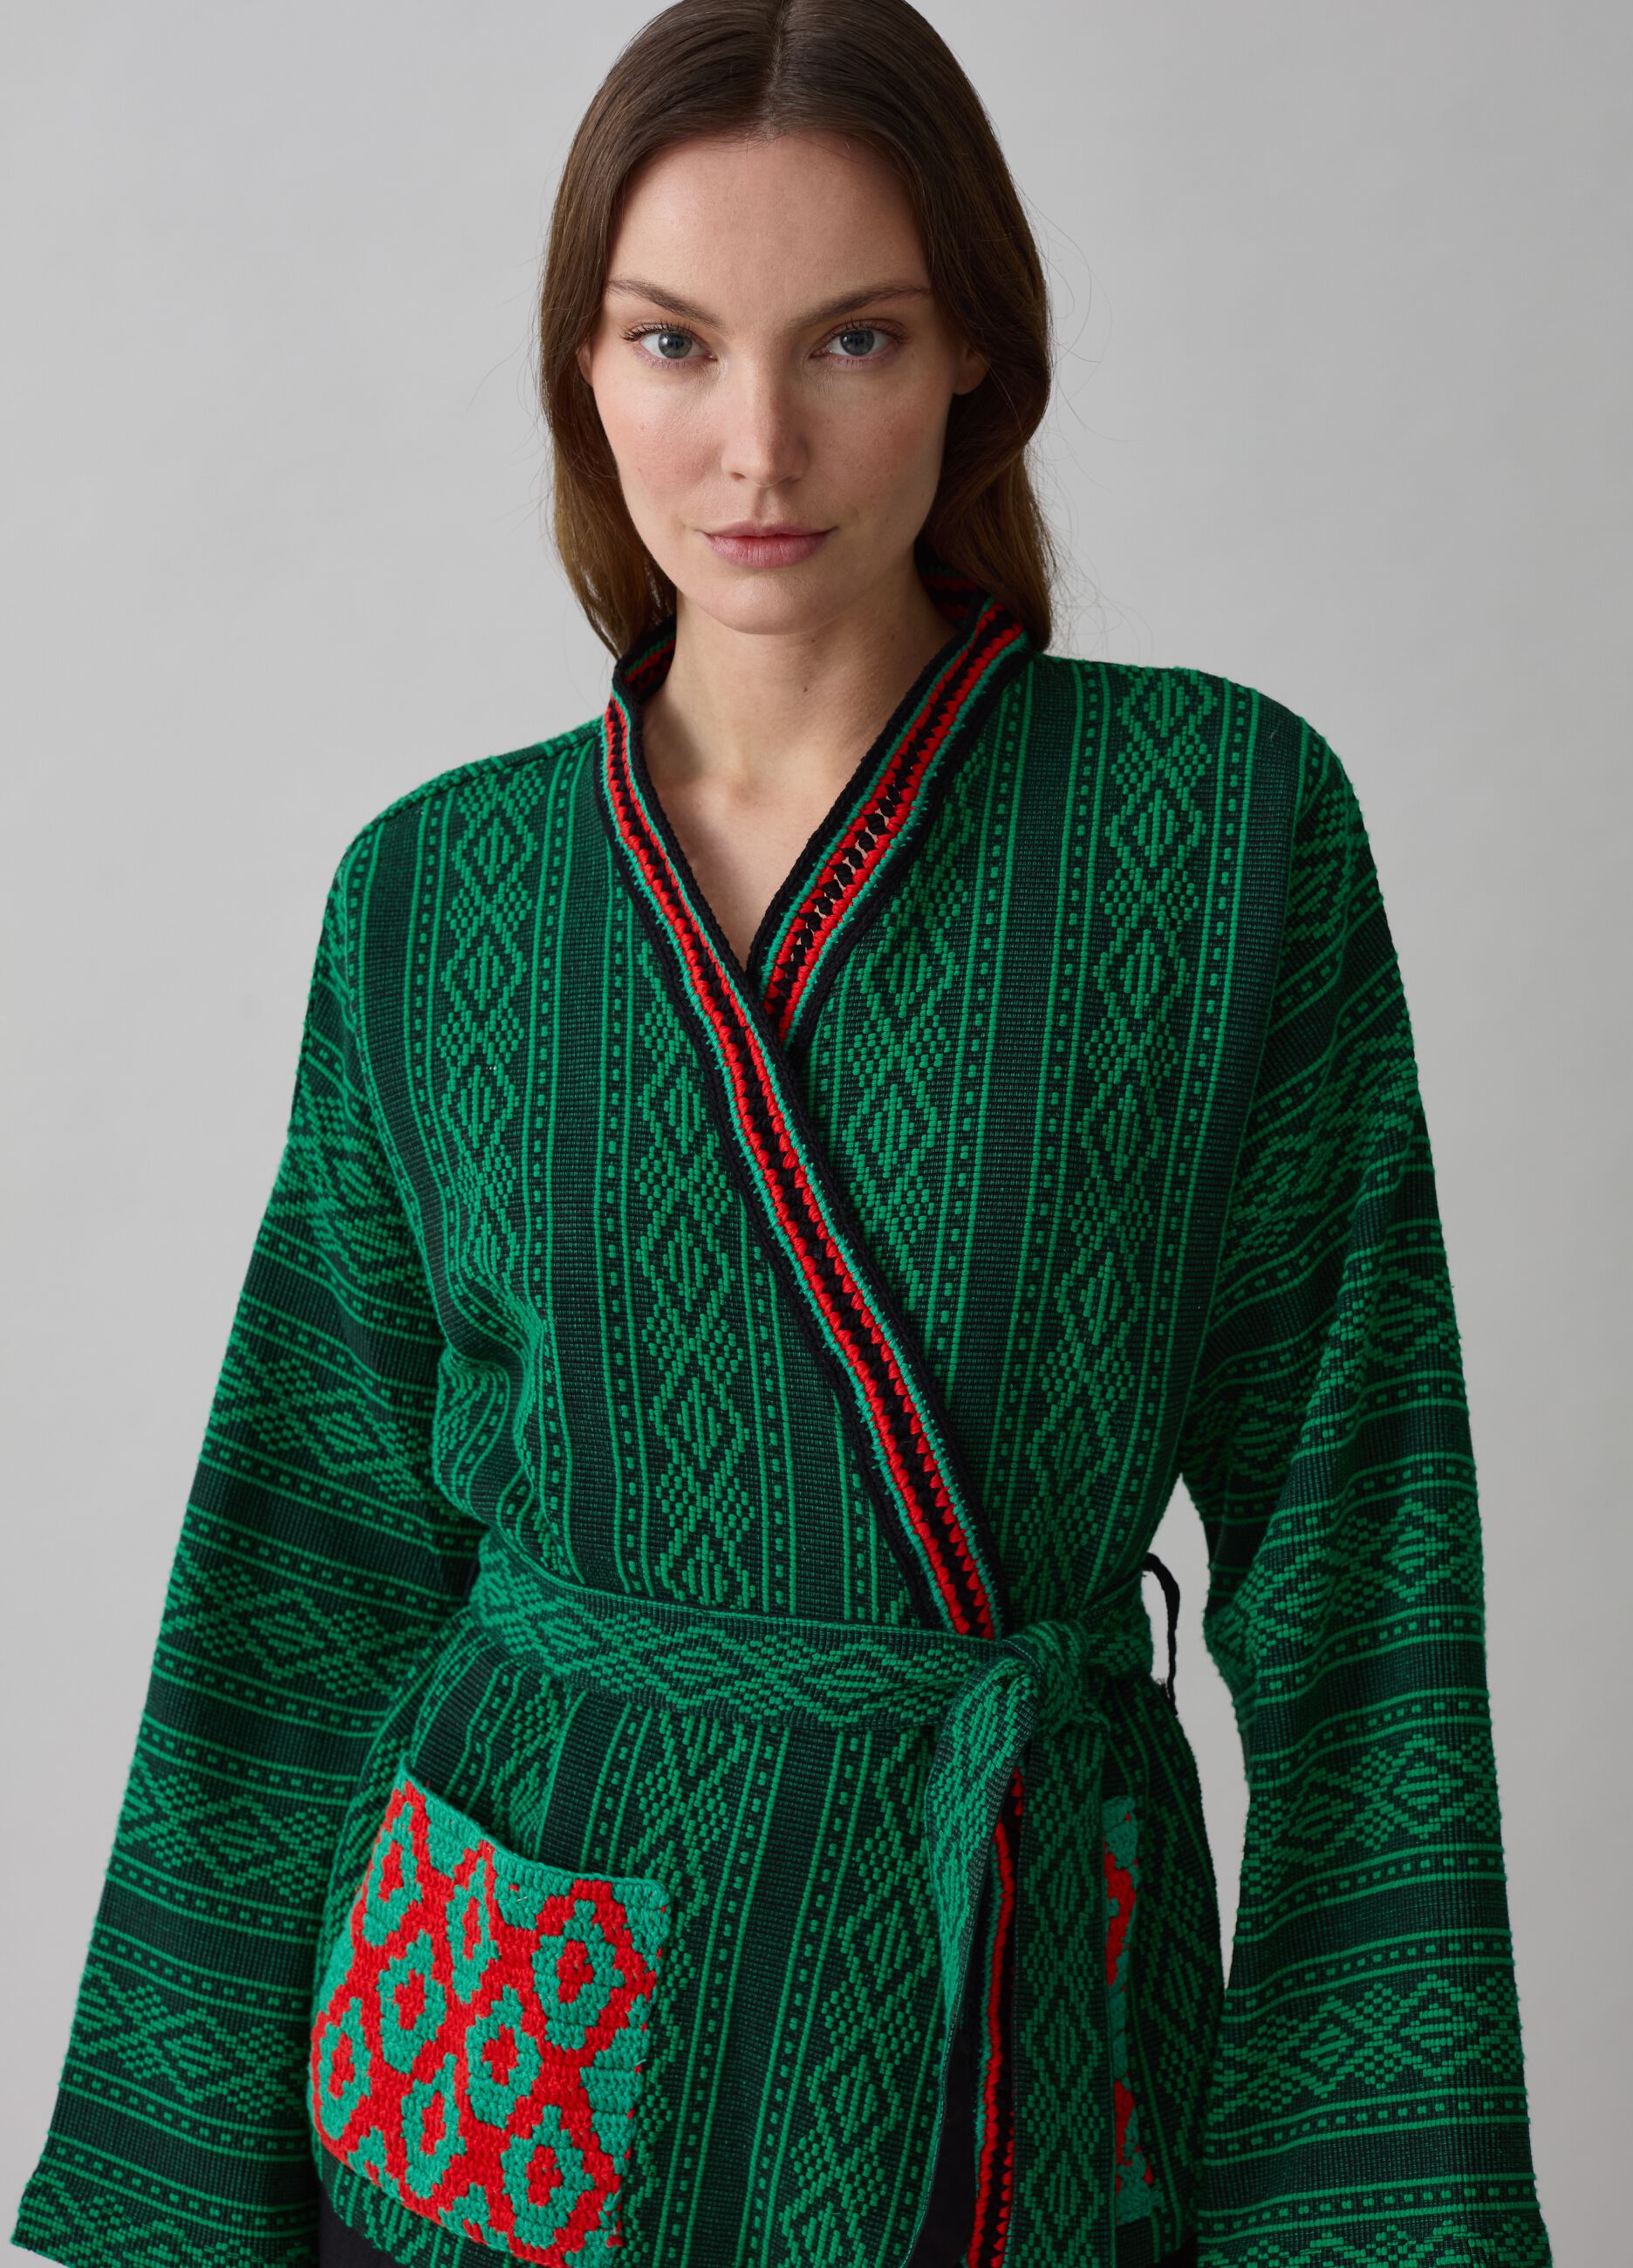 Kimono with ethnic designs_1